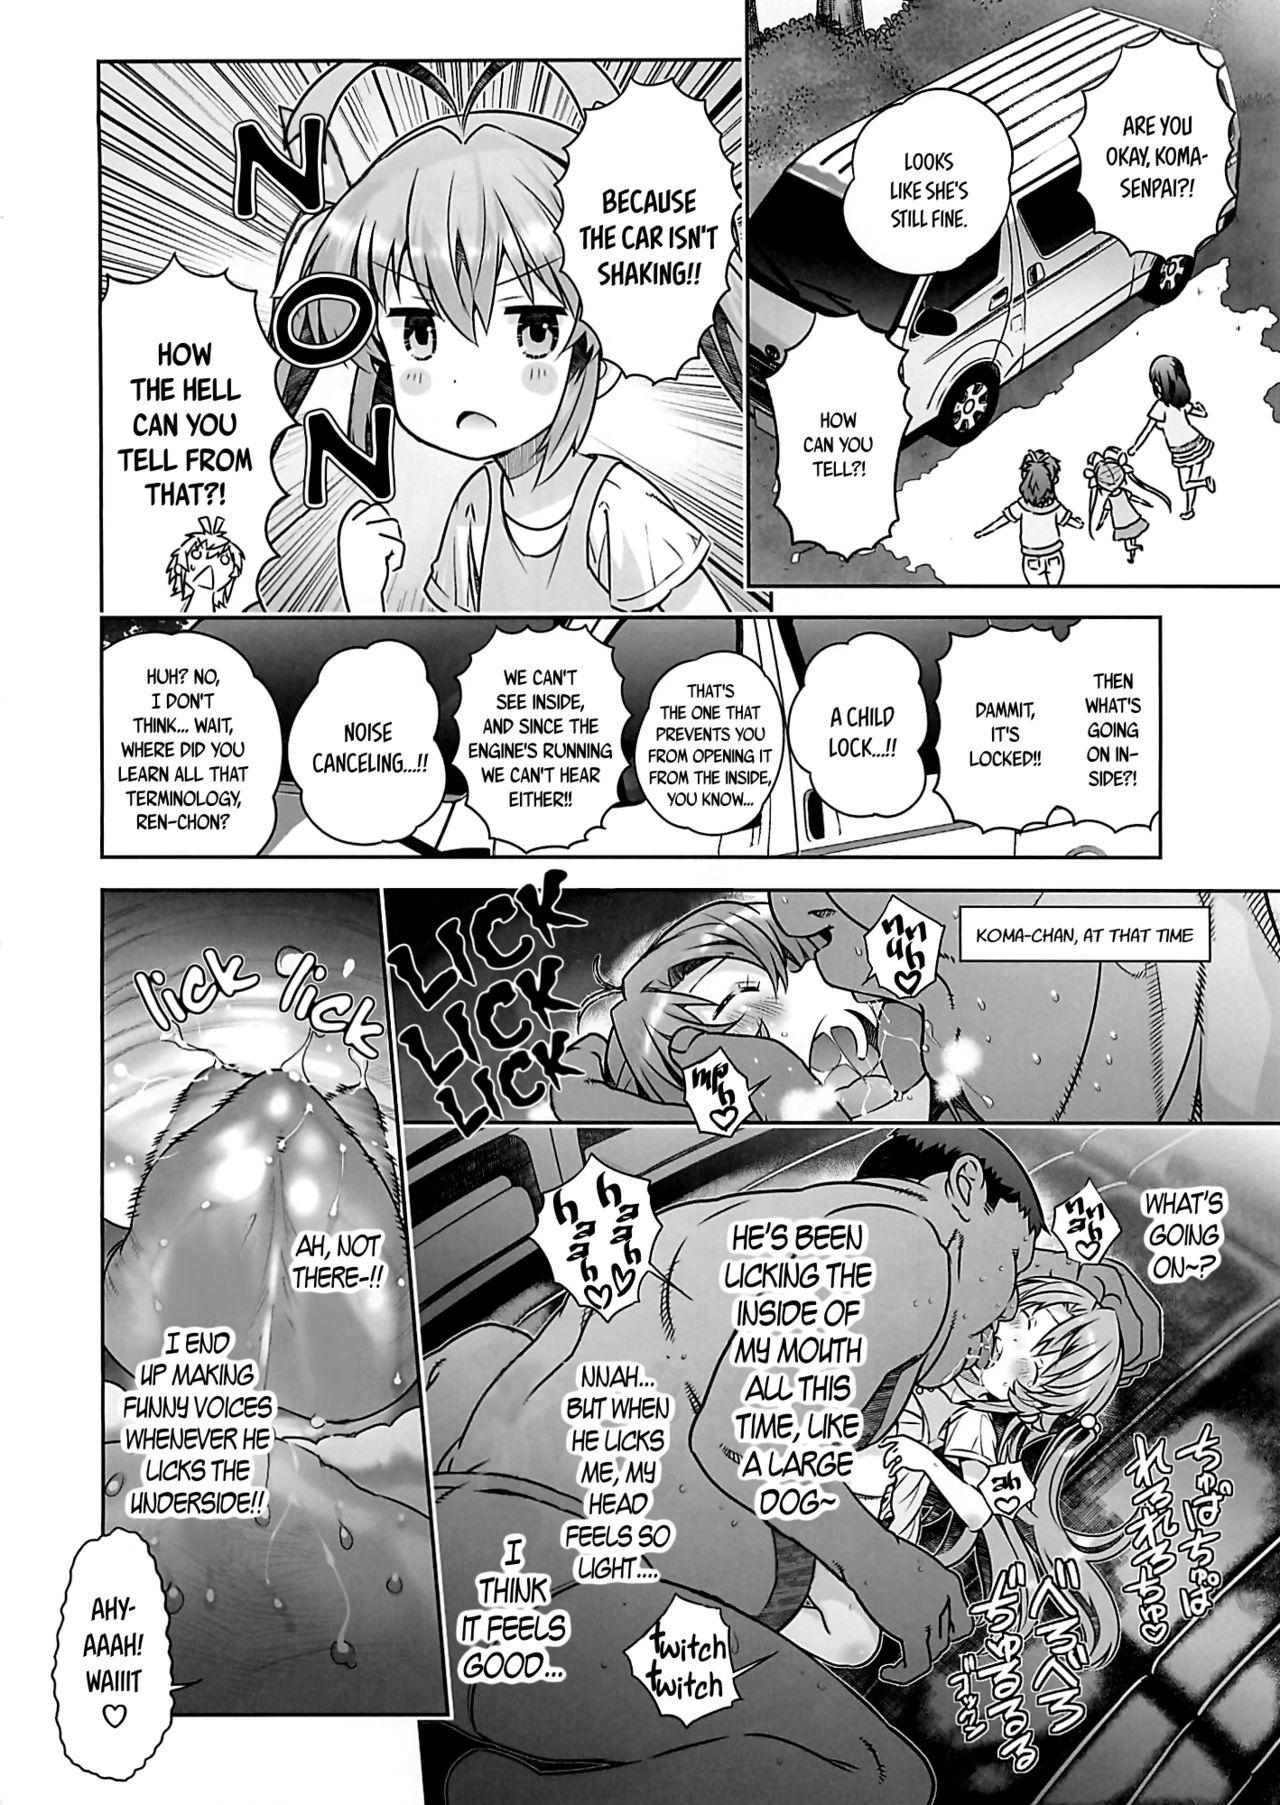 Legs Kan Kan Biyori - Non non biyori Teenfuns - Page 7